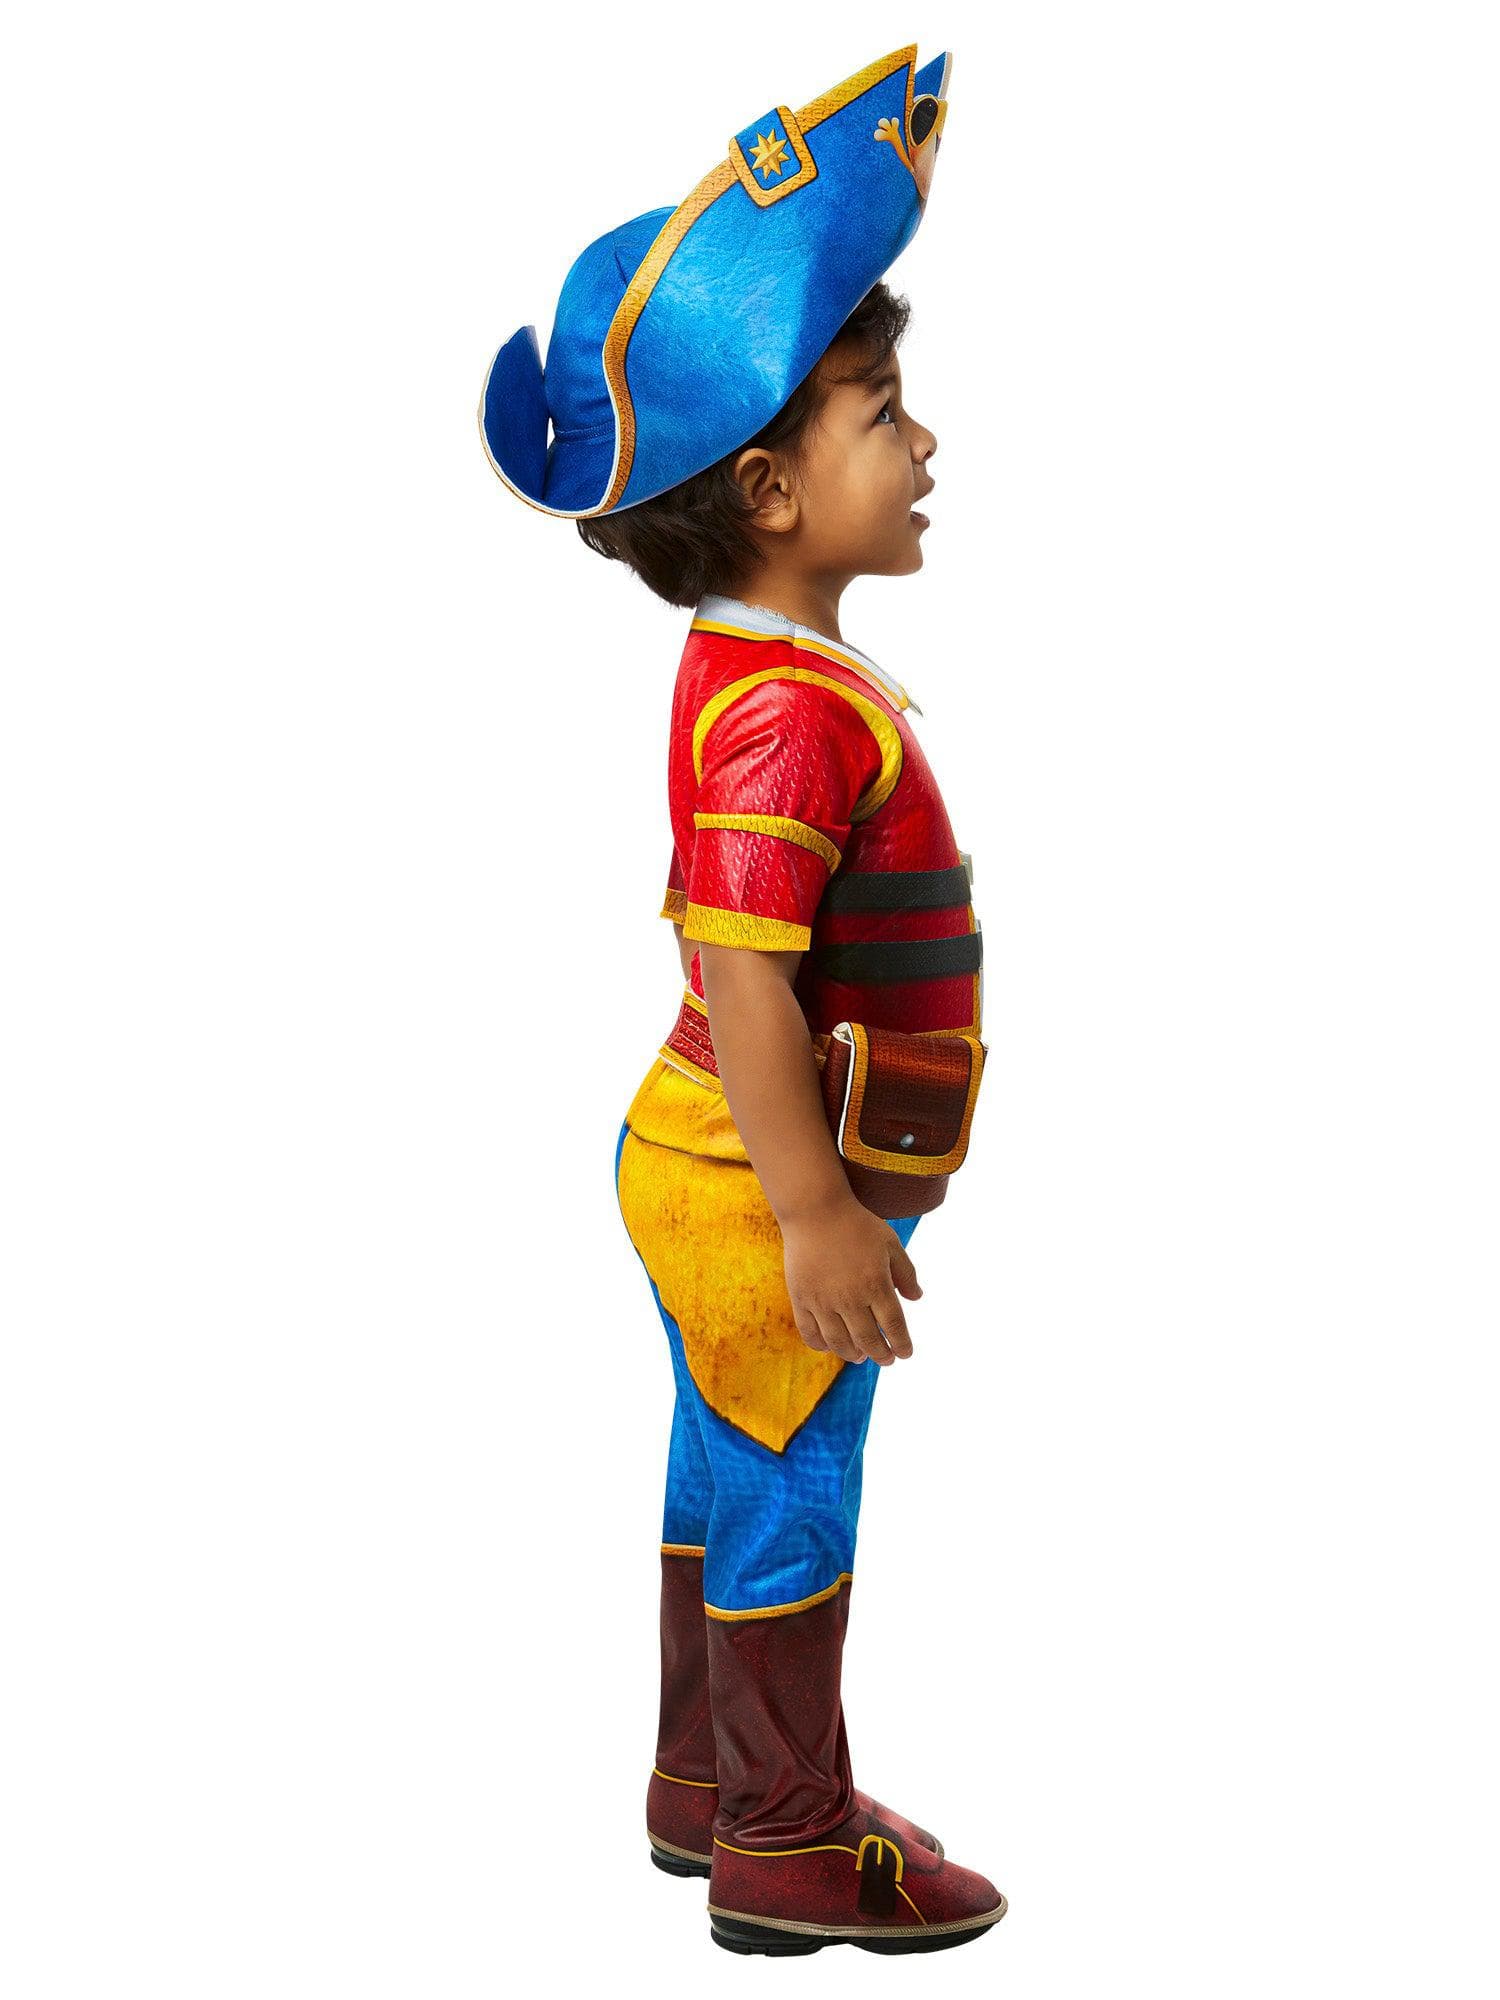 Santiago of the Seas Toddler Costume - costumes.com